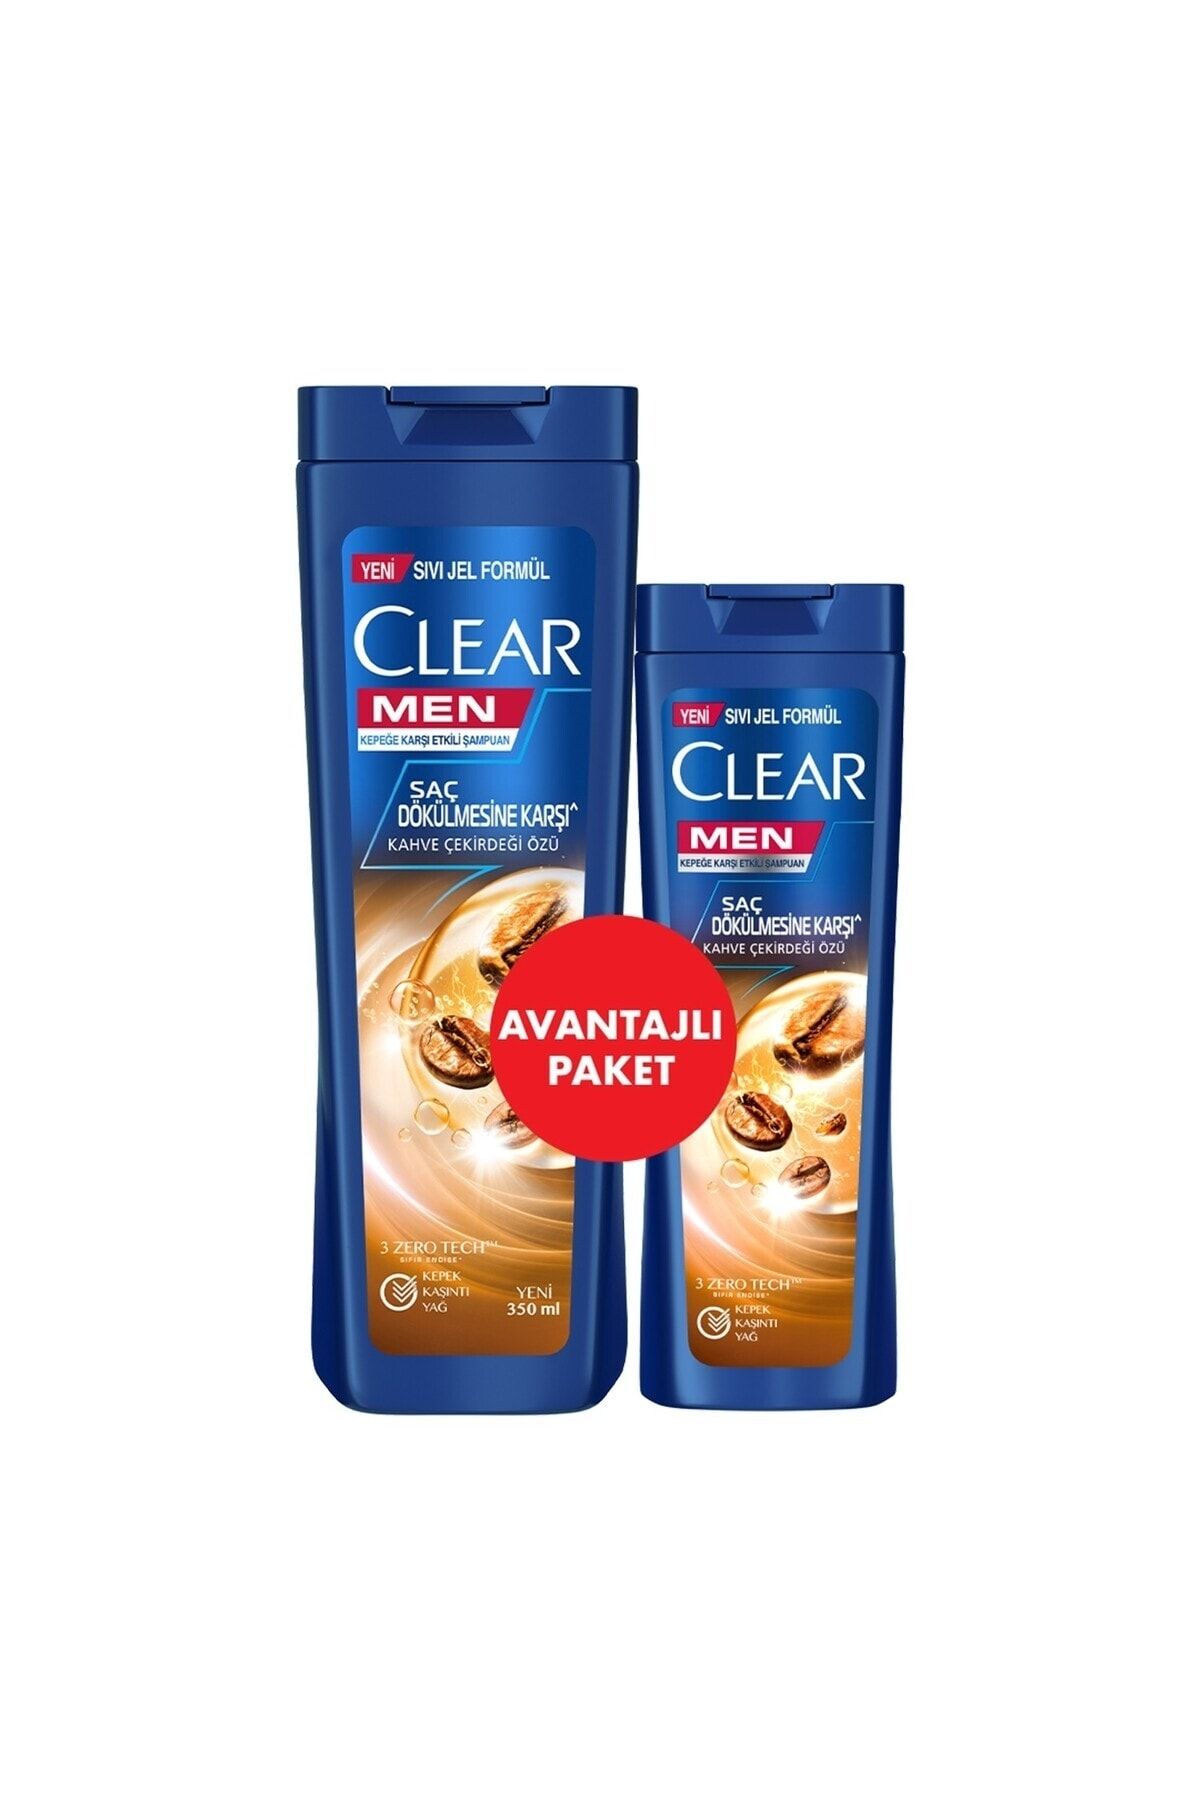 Clear Men Saç Dökülmesine Karşı Etkili Şampuan Kahve Çekirdeği Özü 350 ml + 180 ml